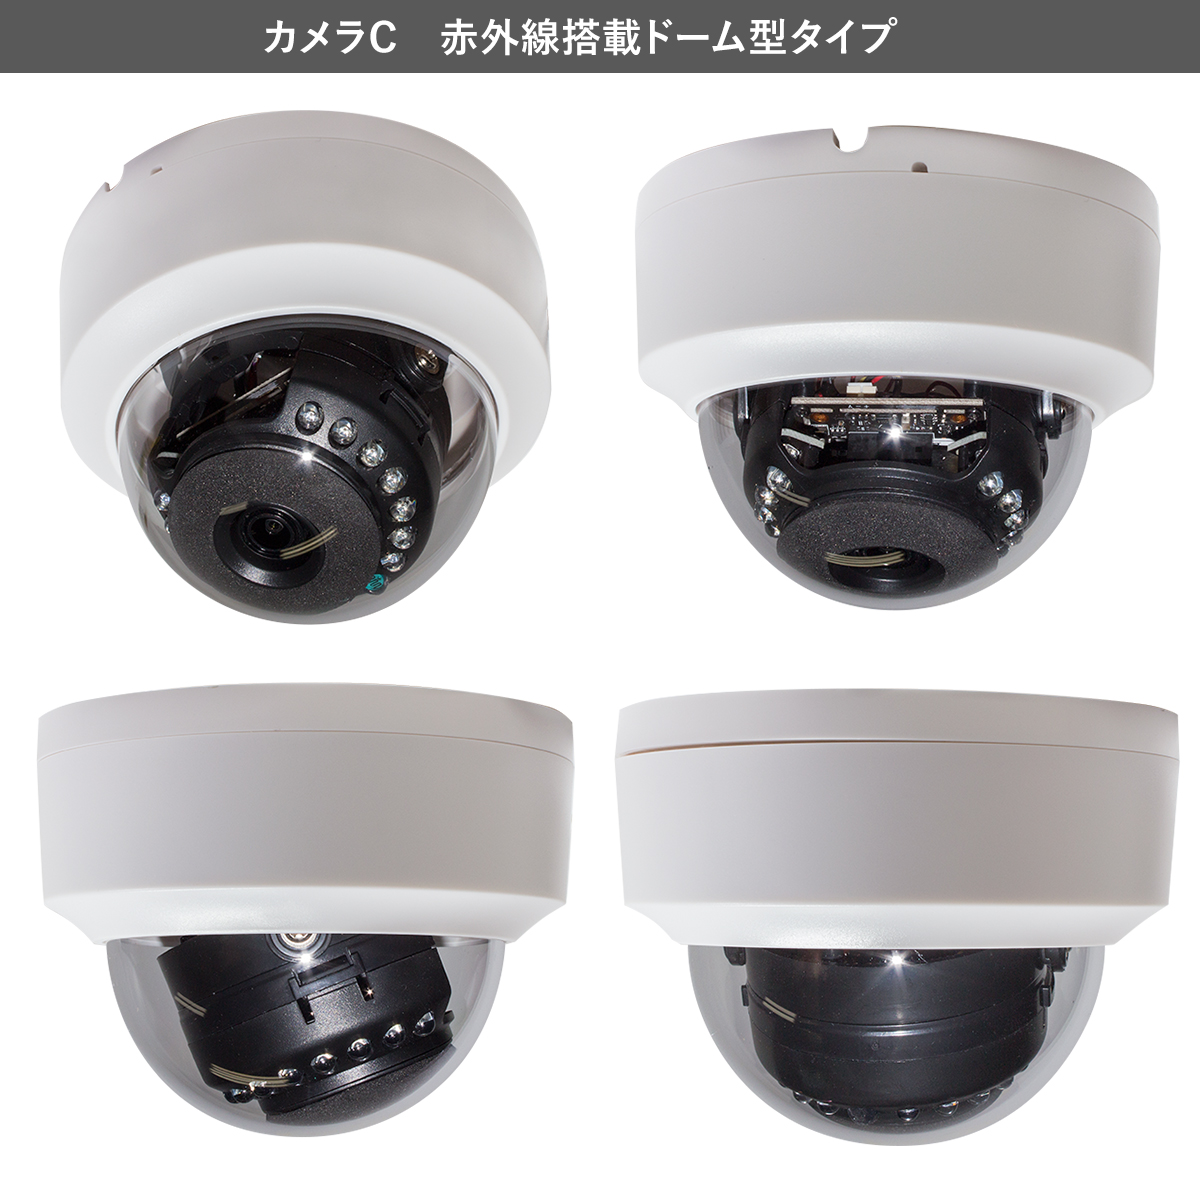 【楽天市場】防犯カメラ 500万画素 日本製 屋外 ドローン搭載 不法投棄監視 1TB SDカード録画 HDMI対応 ミニDVRとカメラ2台